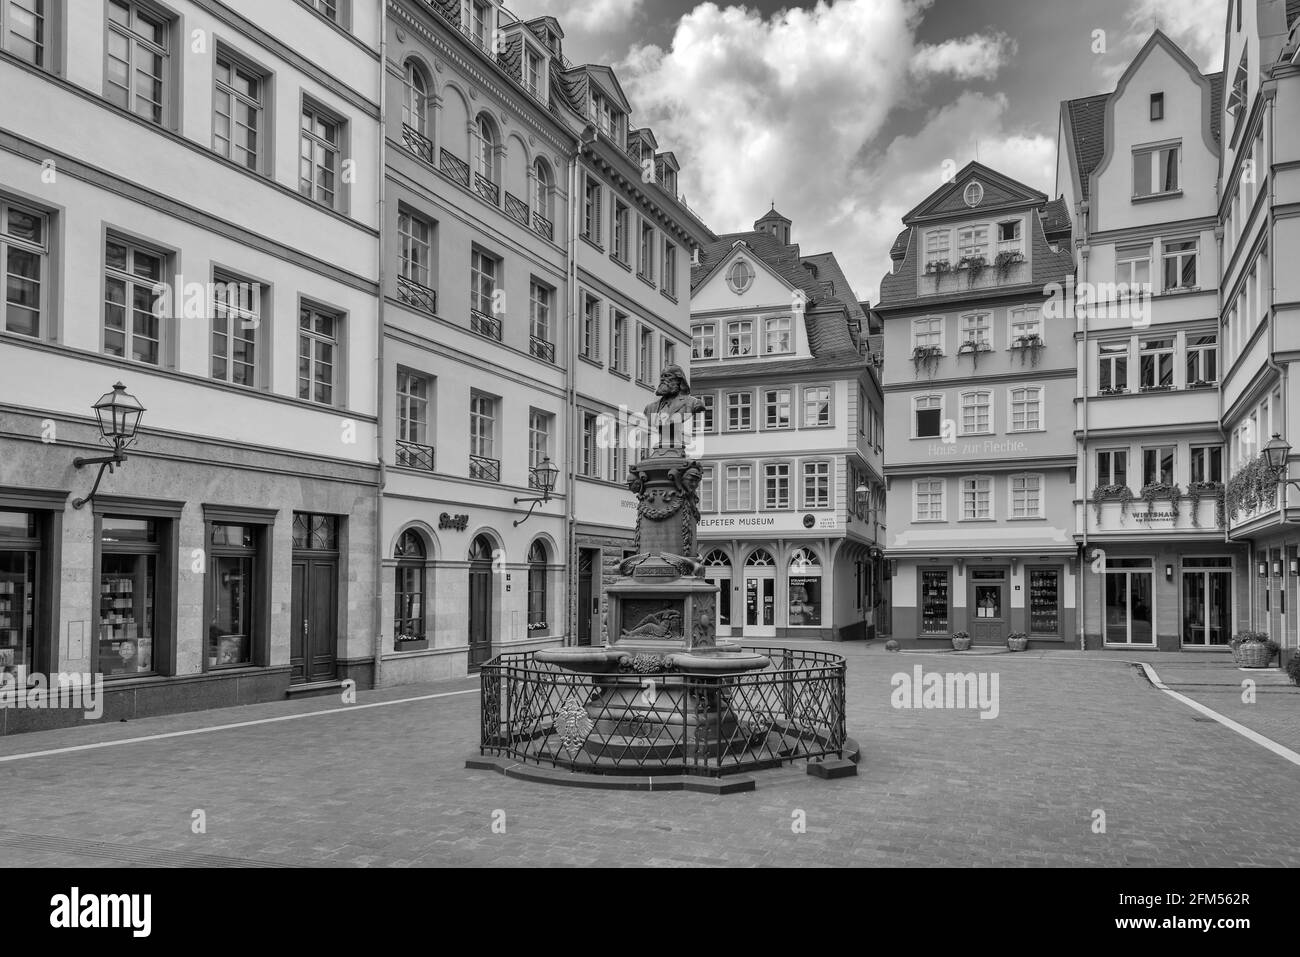 Fontaine Stoltze au marché aux poulets dans la vieille ville historique reconstruite, Francfort, Allemagne Banque D'Images